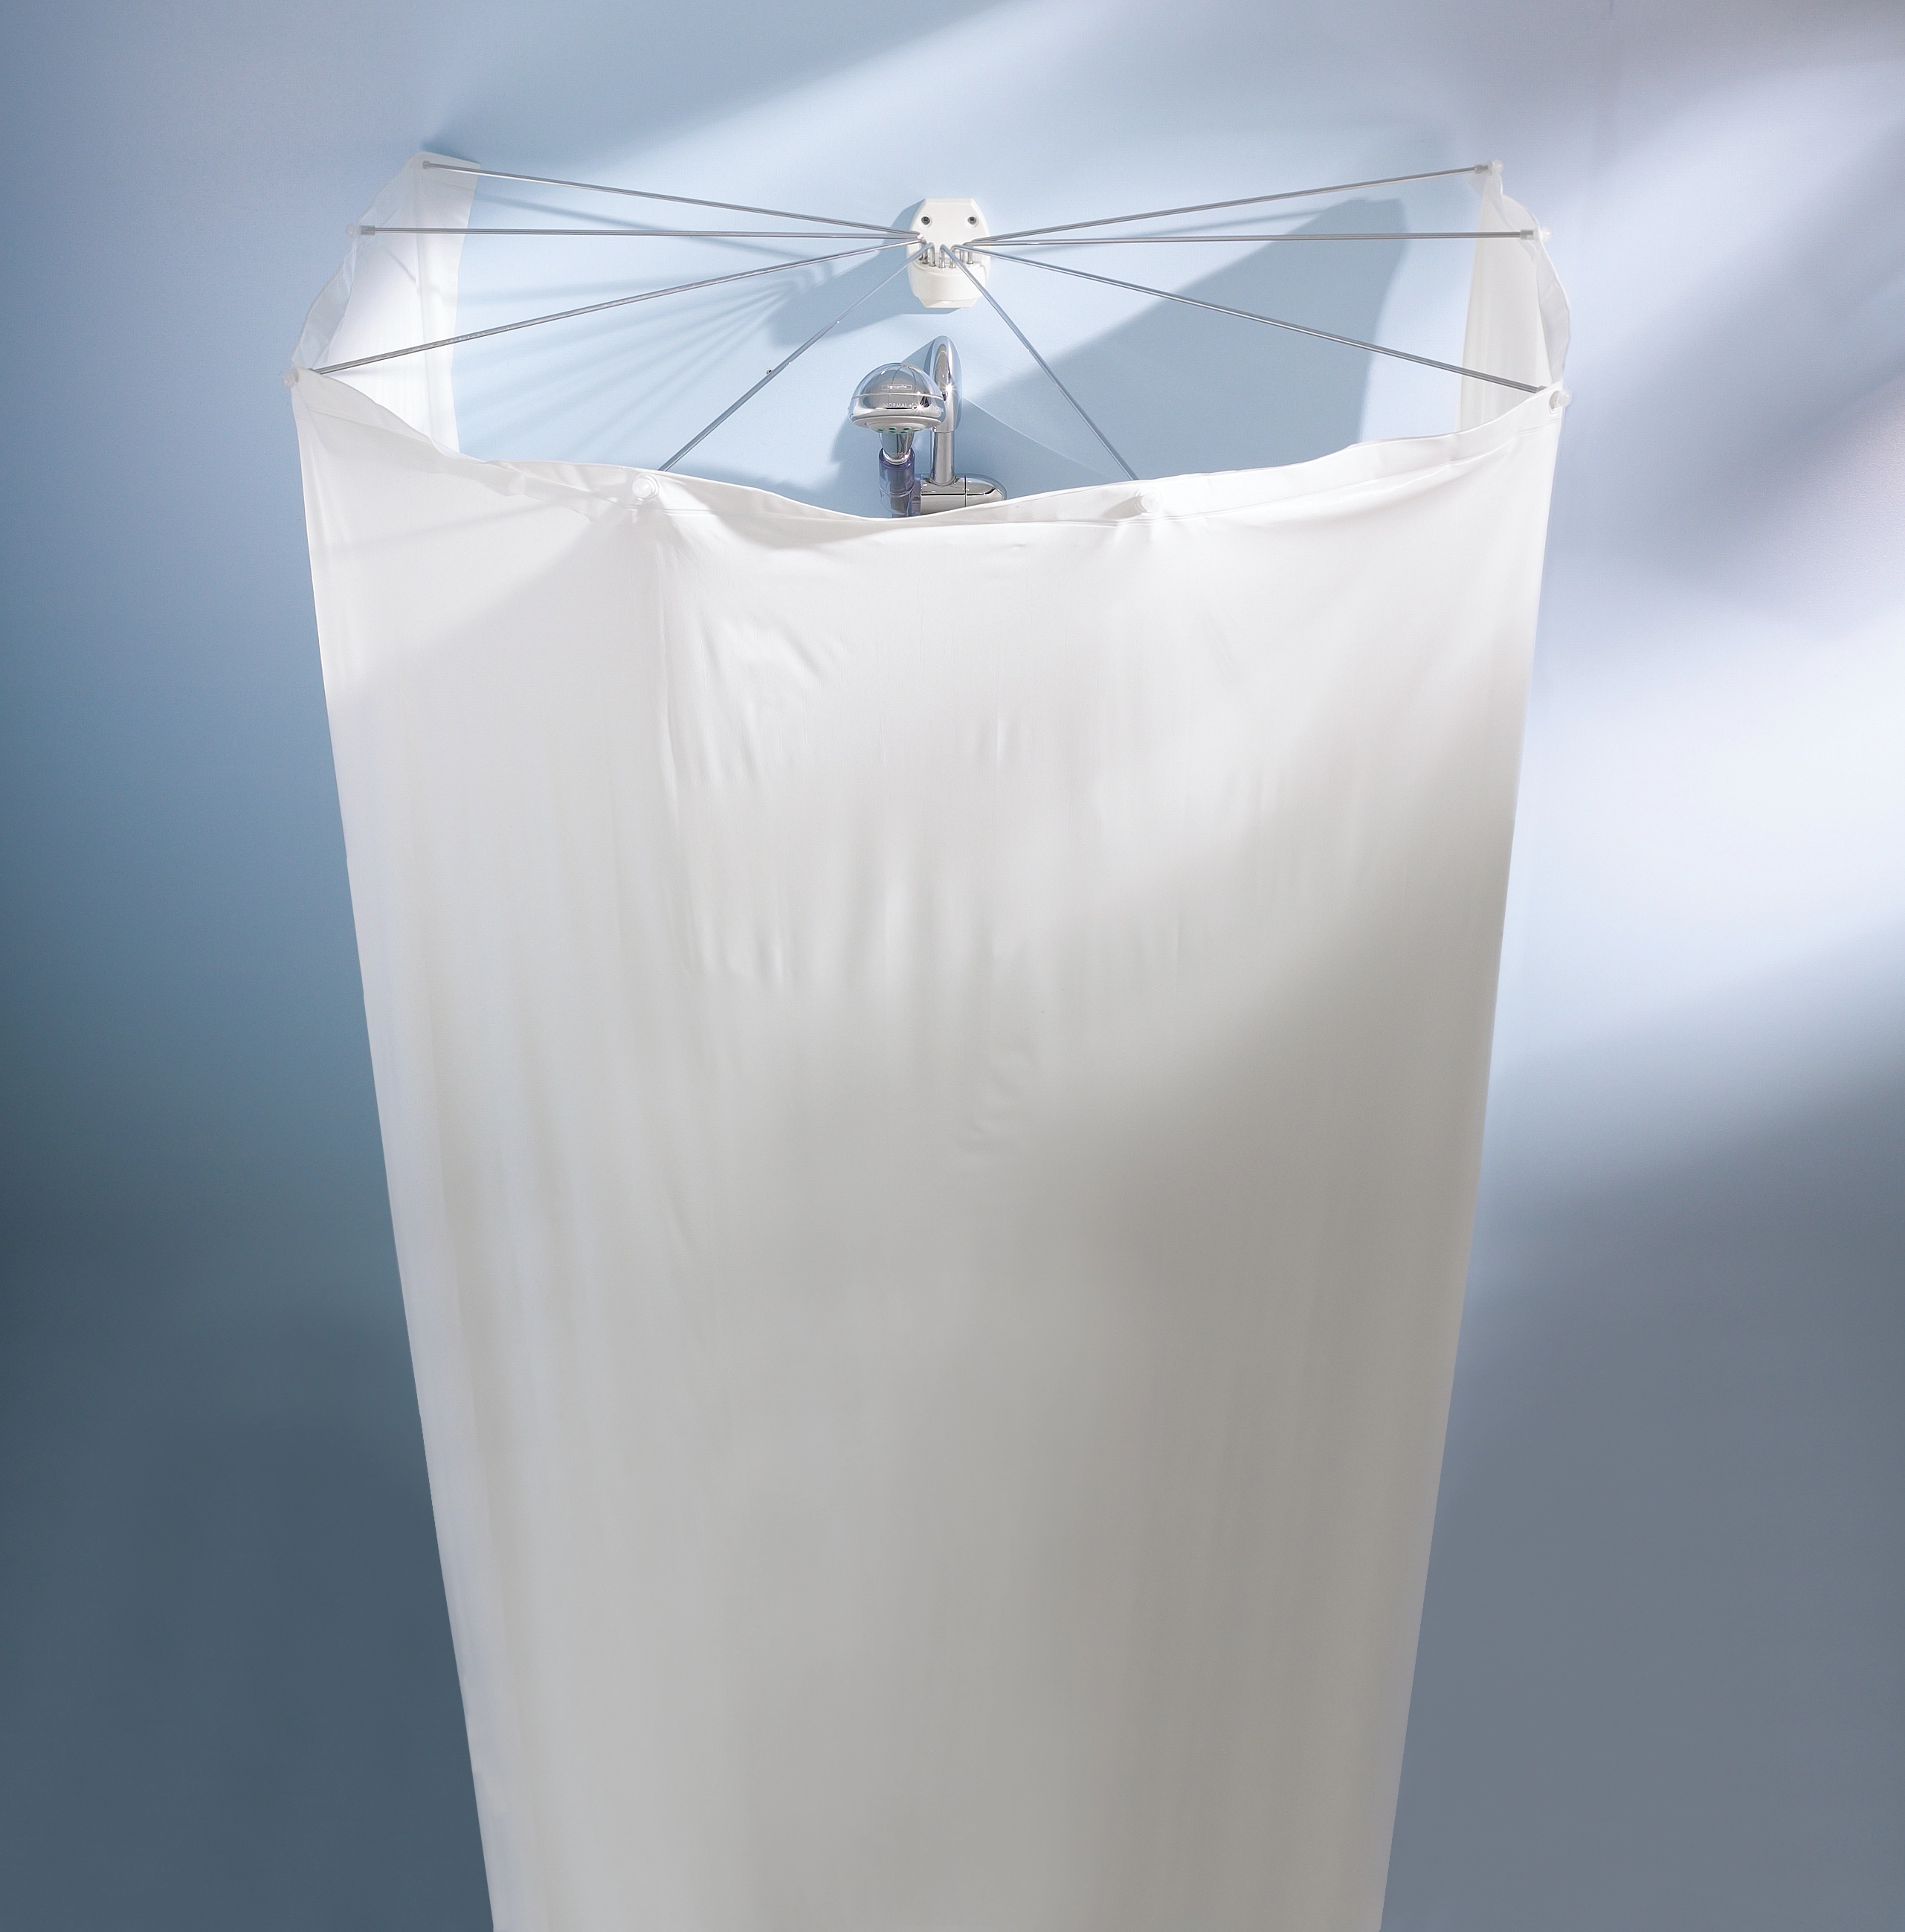 Kleine Wolke Duschvorhangkabine Spider inkl. Duschvorhang Weiß 200 cm x 170  cm kaufen bei OBI